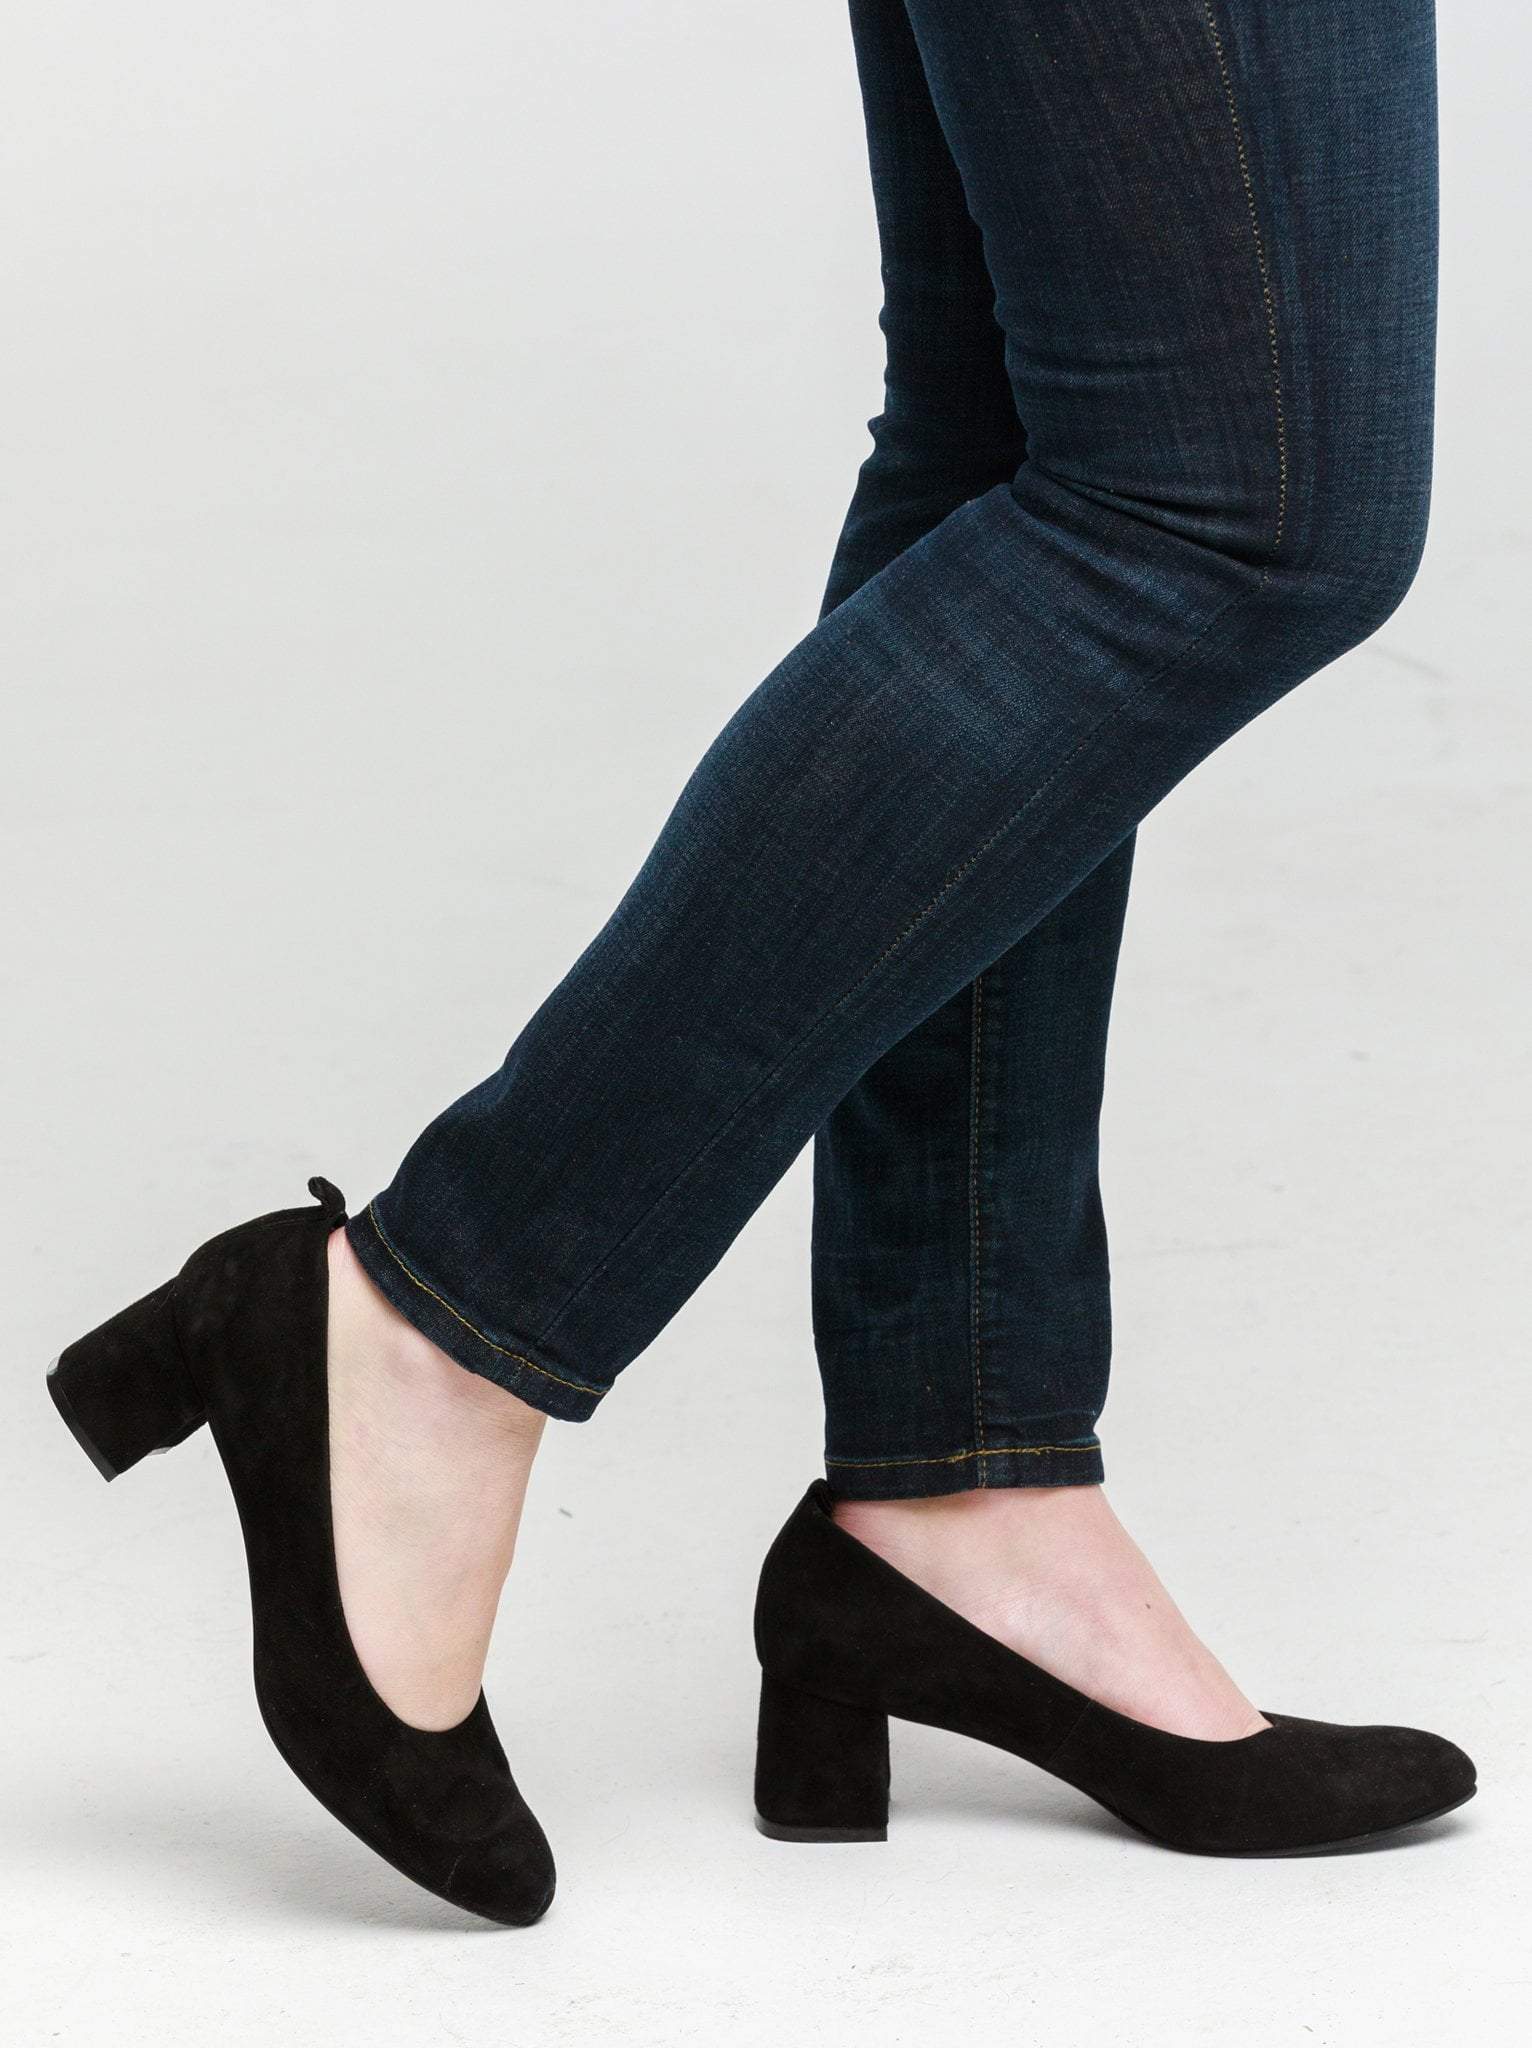 A pair of black block heels in suede